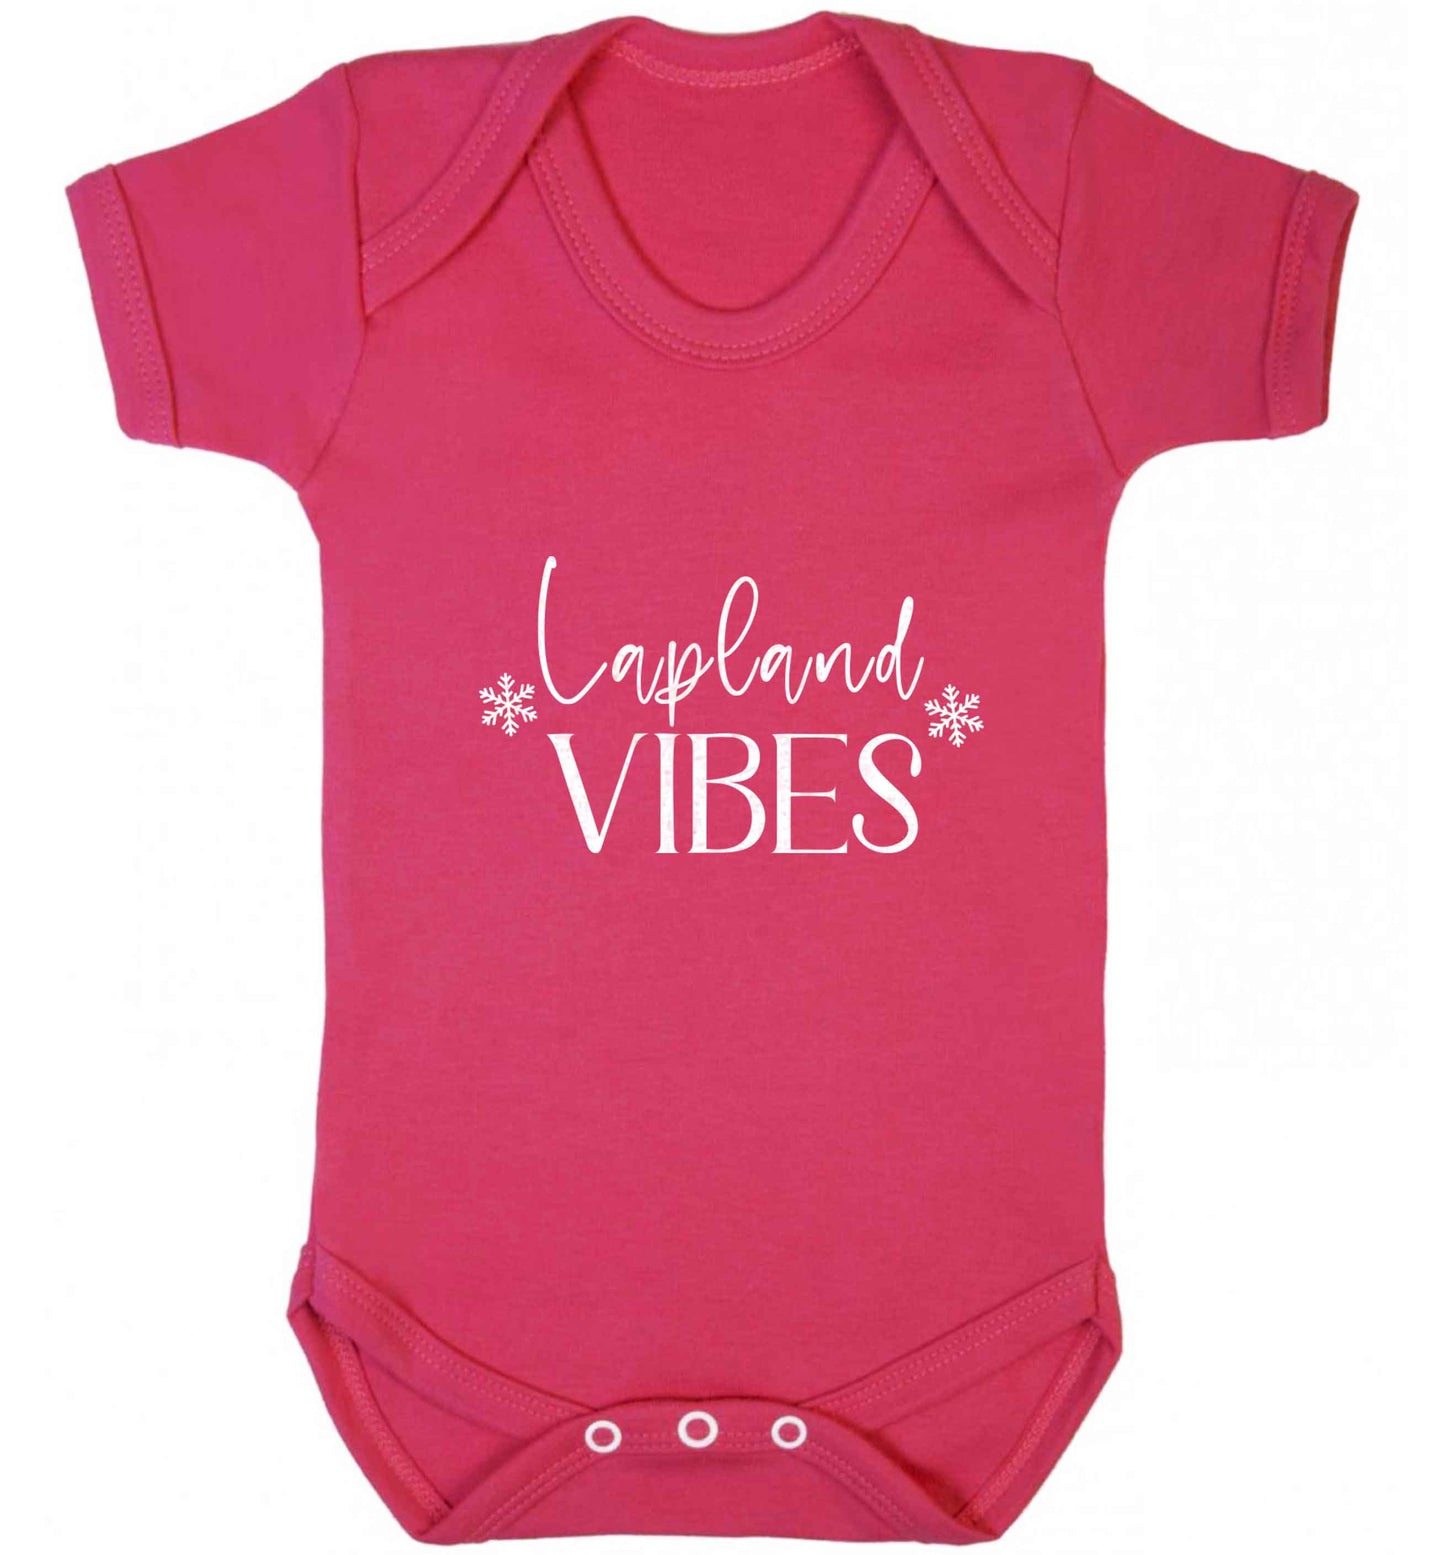 Lapland vibes baby vest dark pink 18-24 months